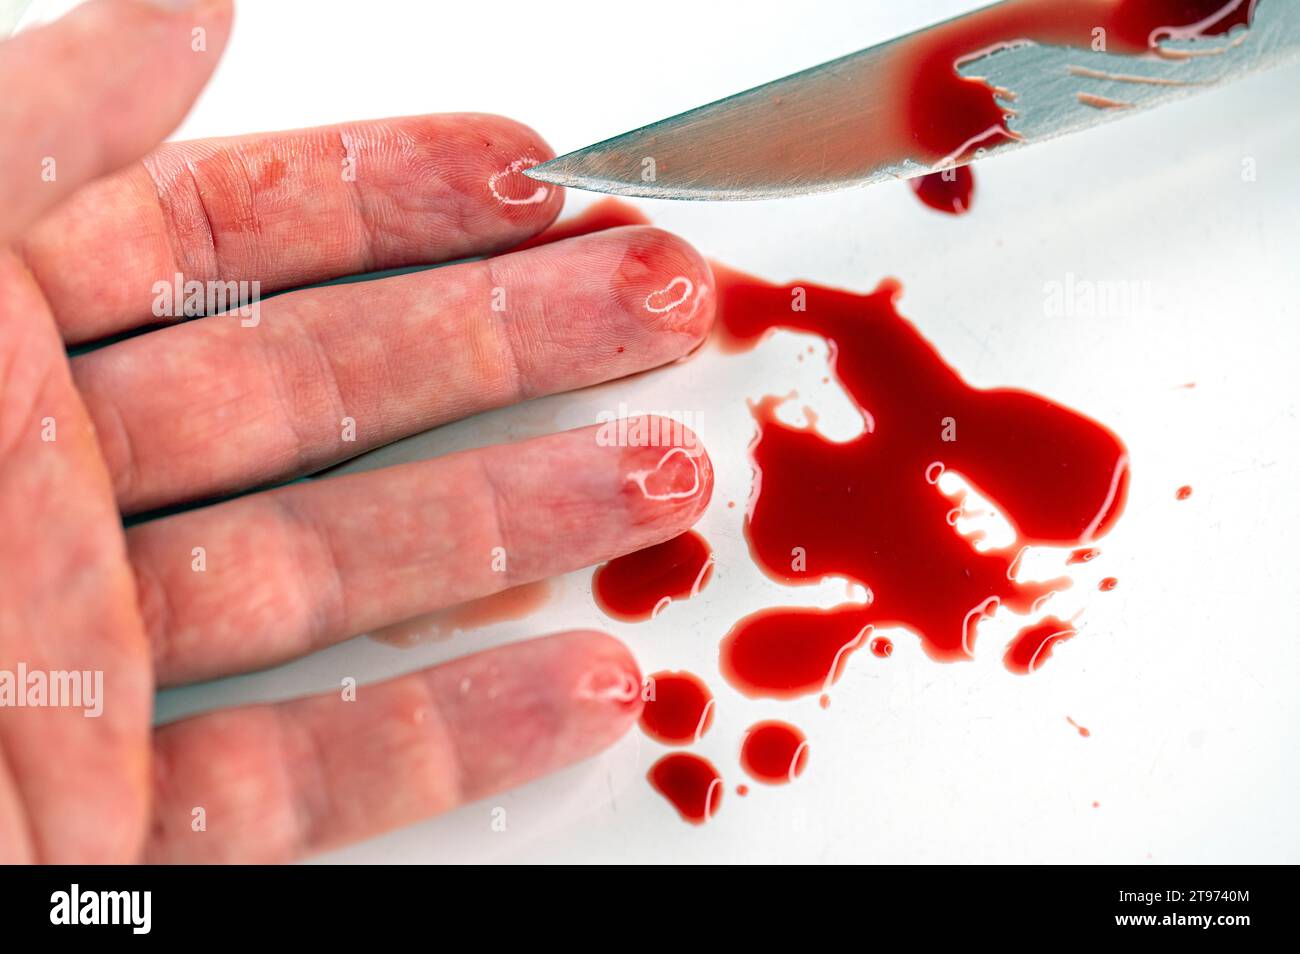 Gros plan du bras dans une flaque sanglante et couteau avec du sang sur une surface blanche, image conceptuelle sur le suicide et le meurtre Banque D'Images